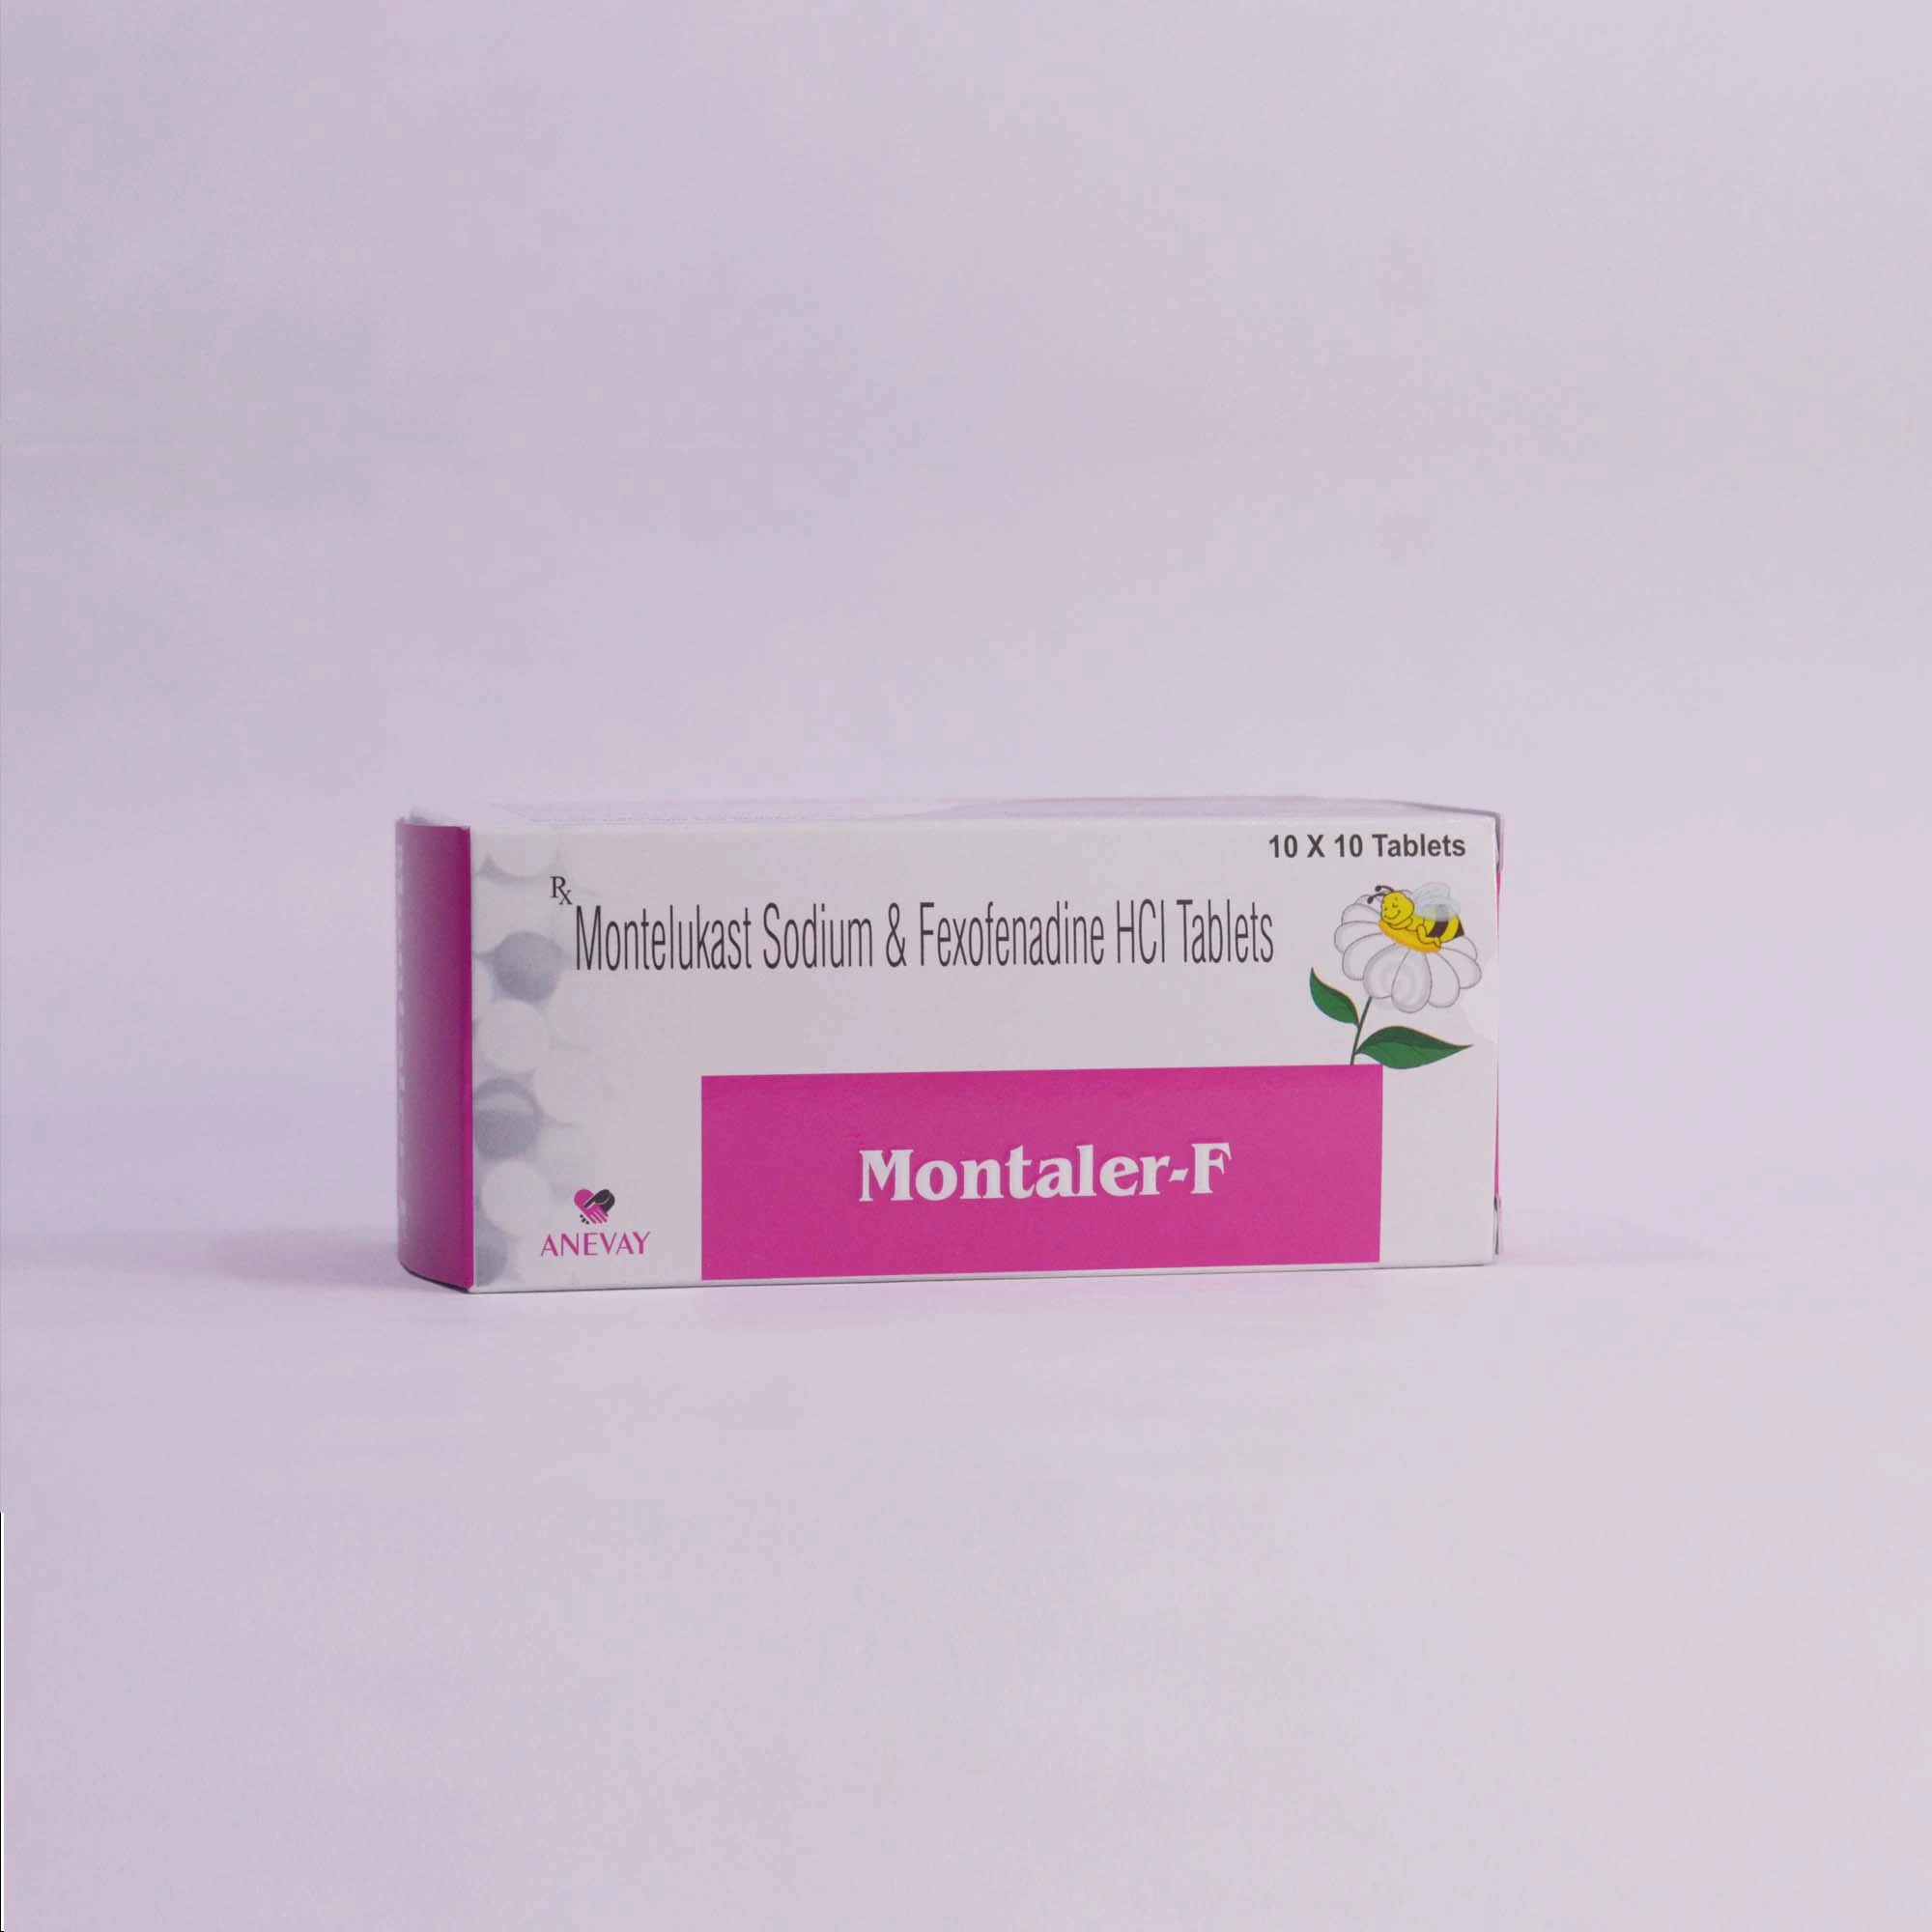 Montaler-F Tablets